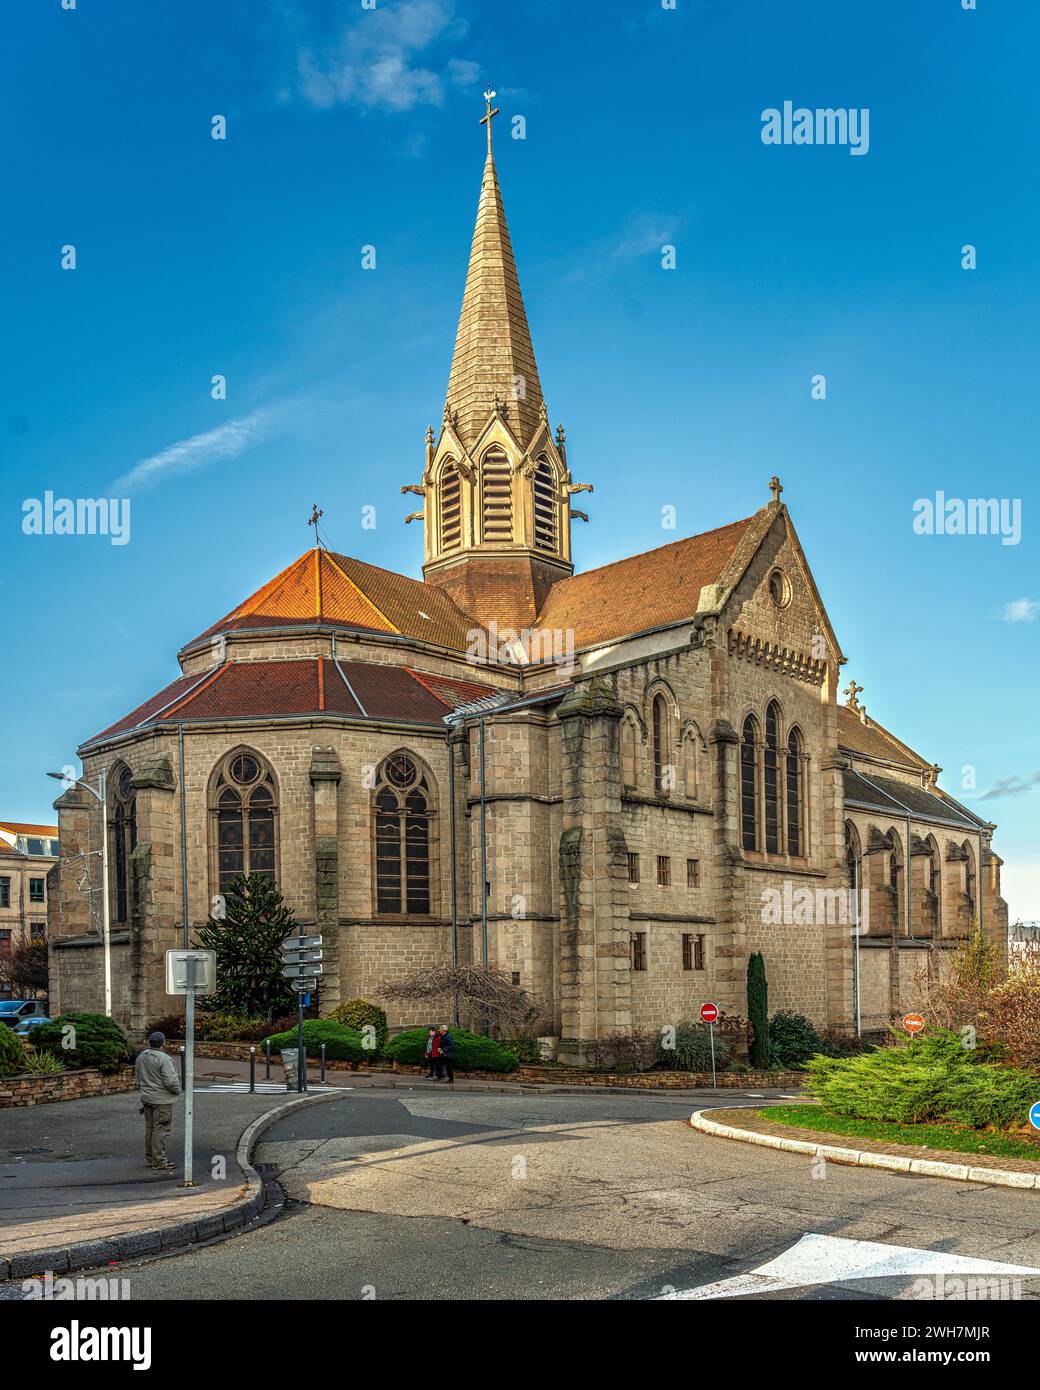 Die Apsiden und der Glockenturm der neogotischen Kirche Firminy, die Saint-Firmin gewidmet ist. Firminy, Departement Loire, Region Auvergne Rhône Alpes, Frankreich Stockfoto